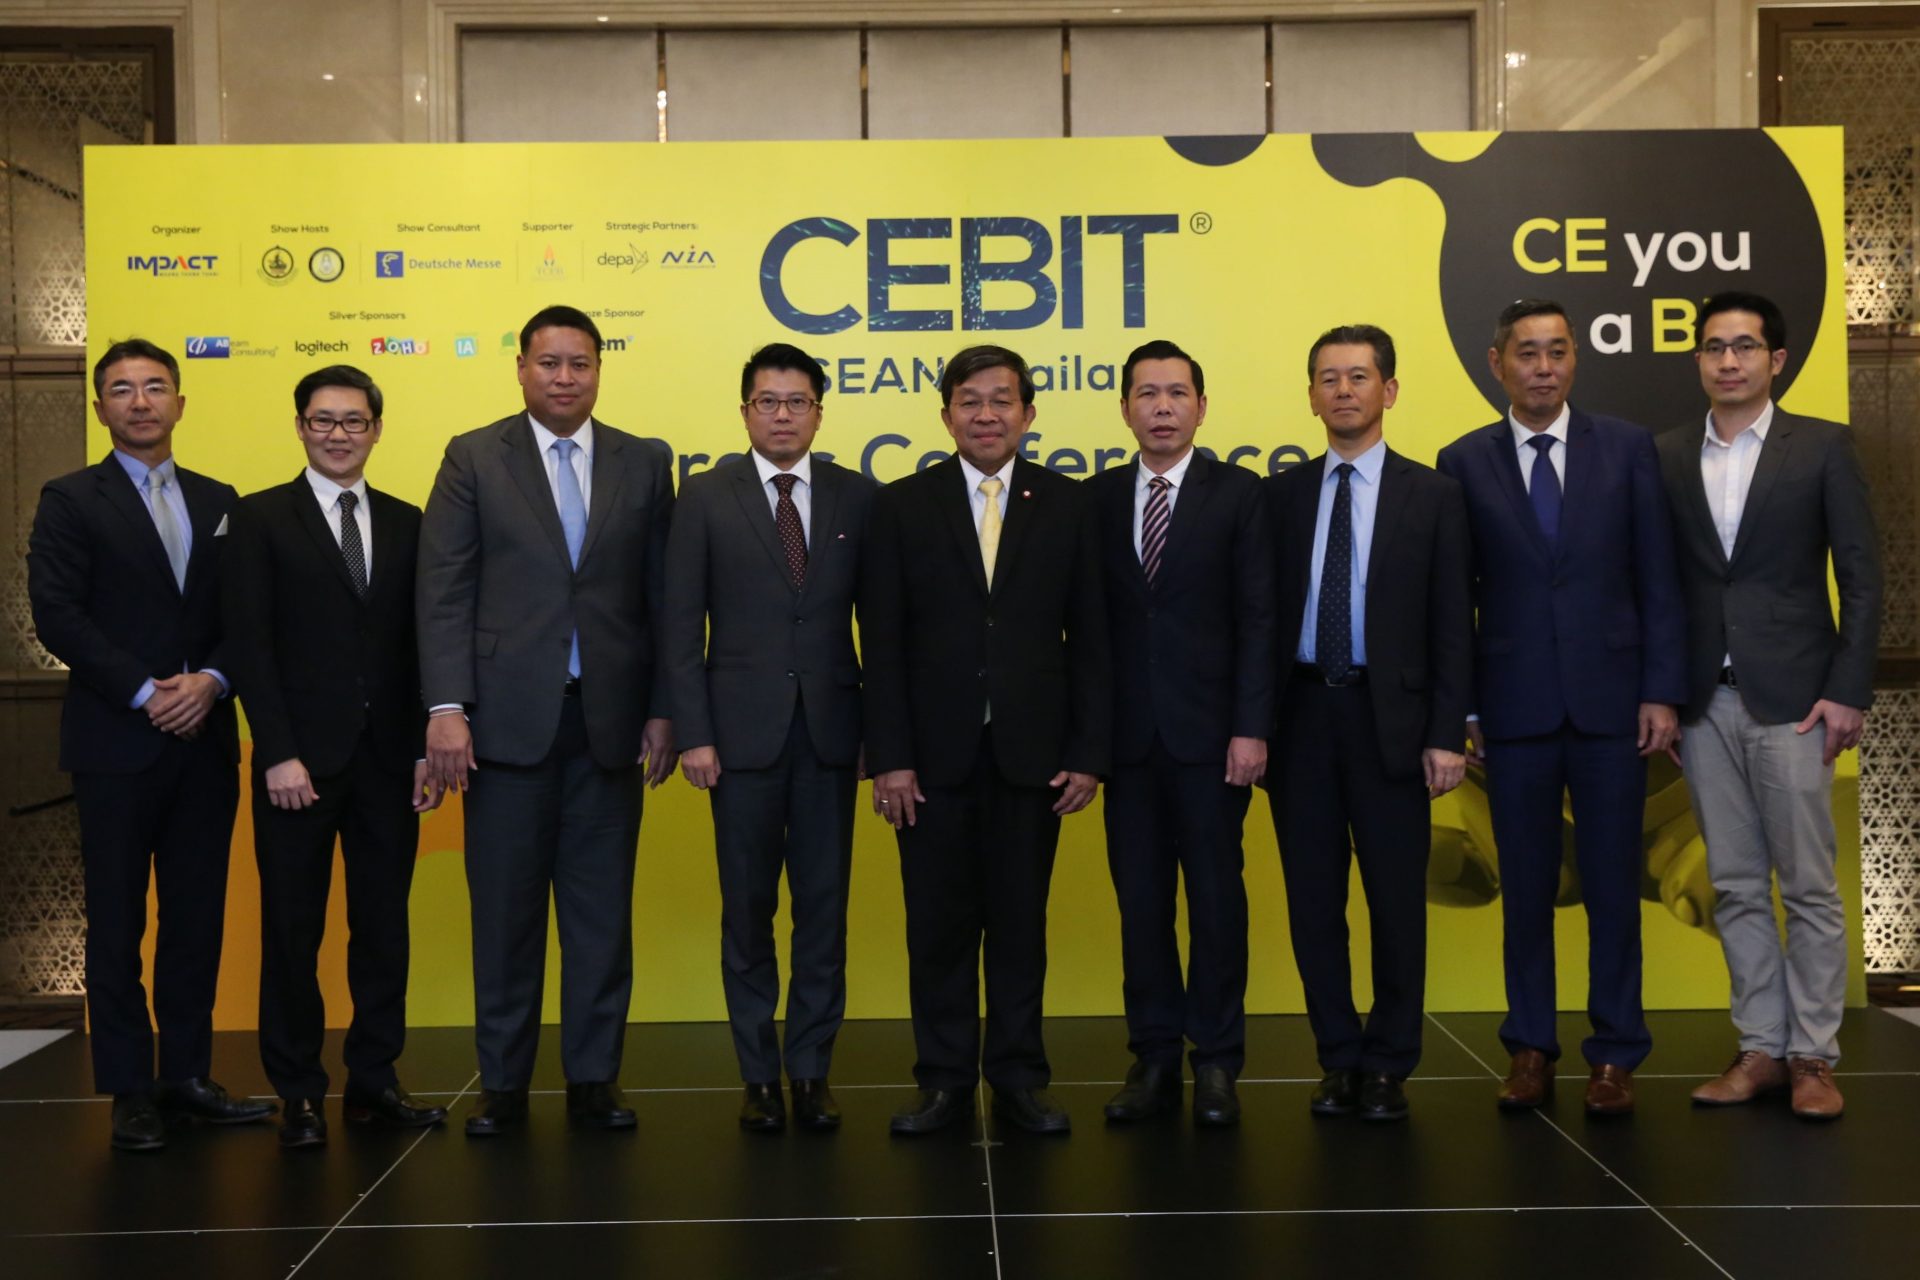 เตรียมพบงาน CEBIT ASEAN Thailand ครั้งแรกในไทย งานที่หนุนเทคโนโลยีเพื่อขับเคลื่อนเศรษฐกิจและสังคม